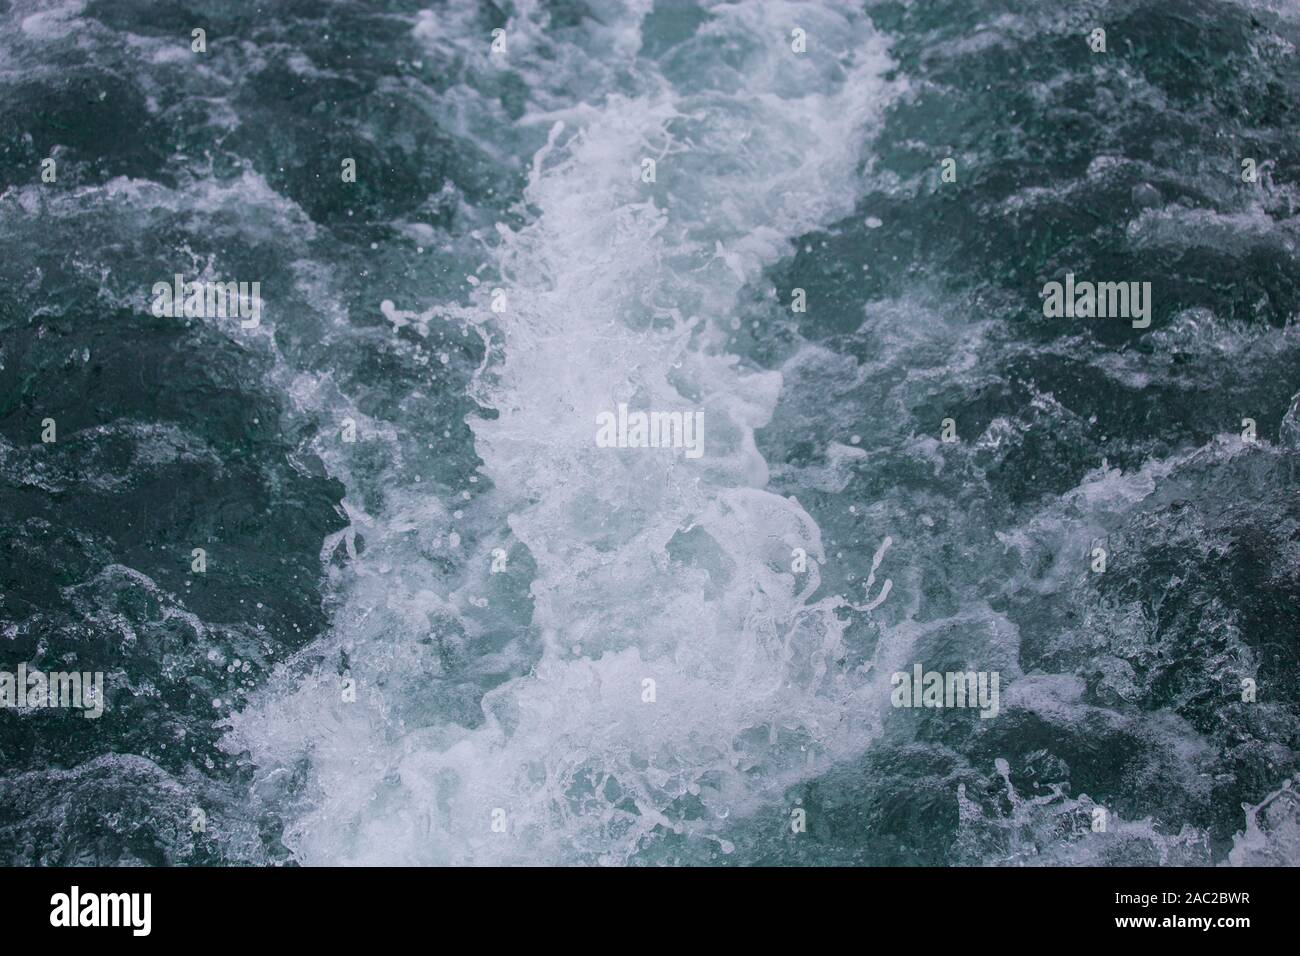 Tracce della nave sulla superficie del mare, schiuma e onde fragoroso Foto Stock